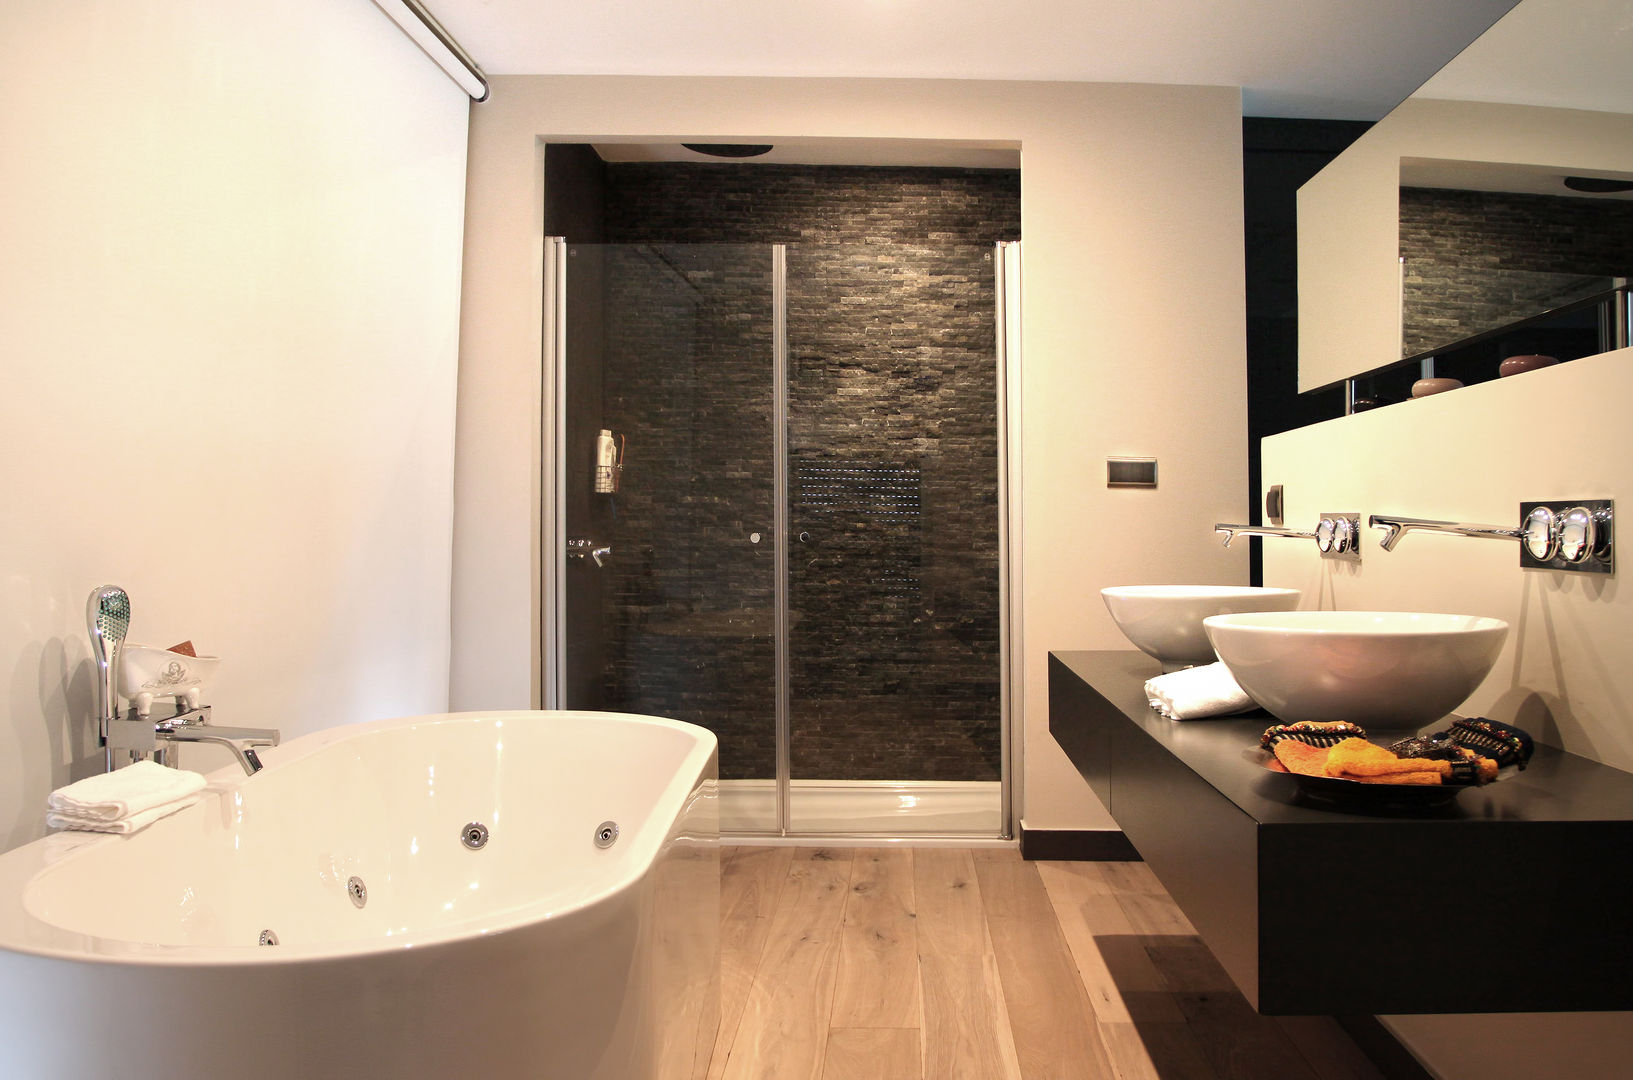 SAHİLEVLERİ PROJE, As Tasarım - Mimarlık As Tasarım - Mimarlık Modern bathroom Decoration